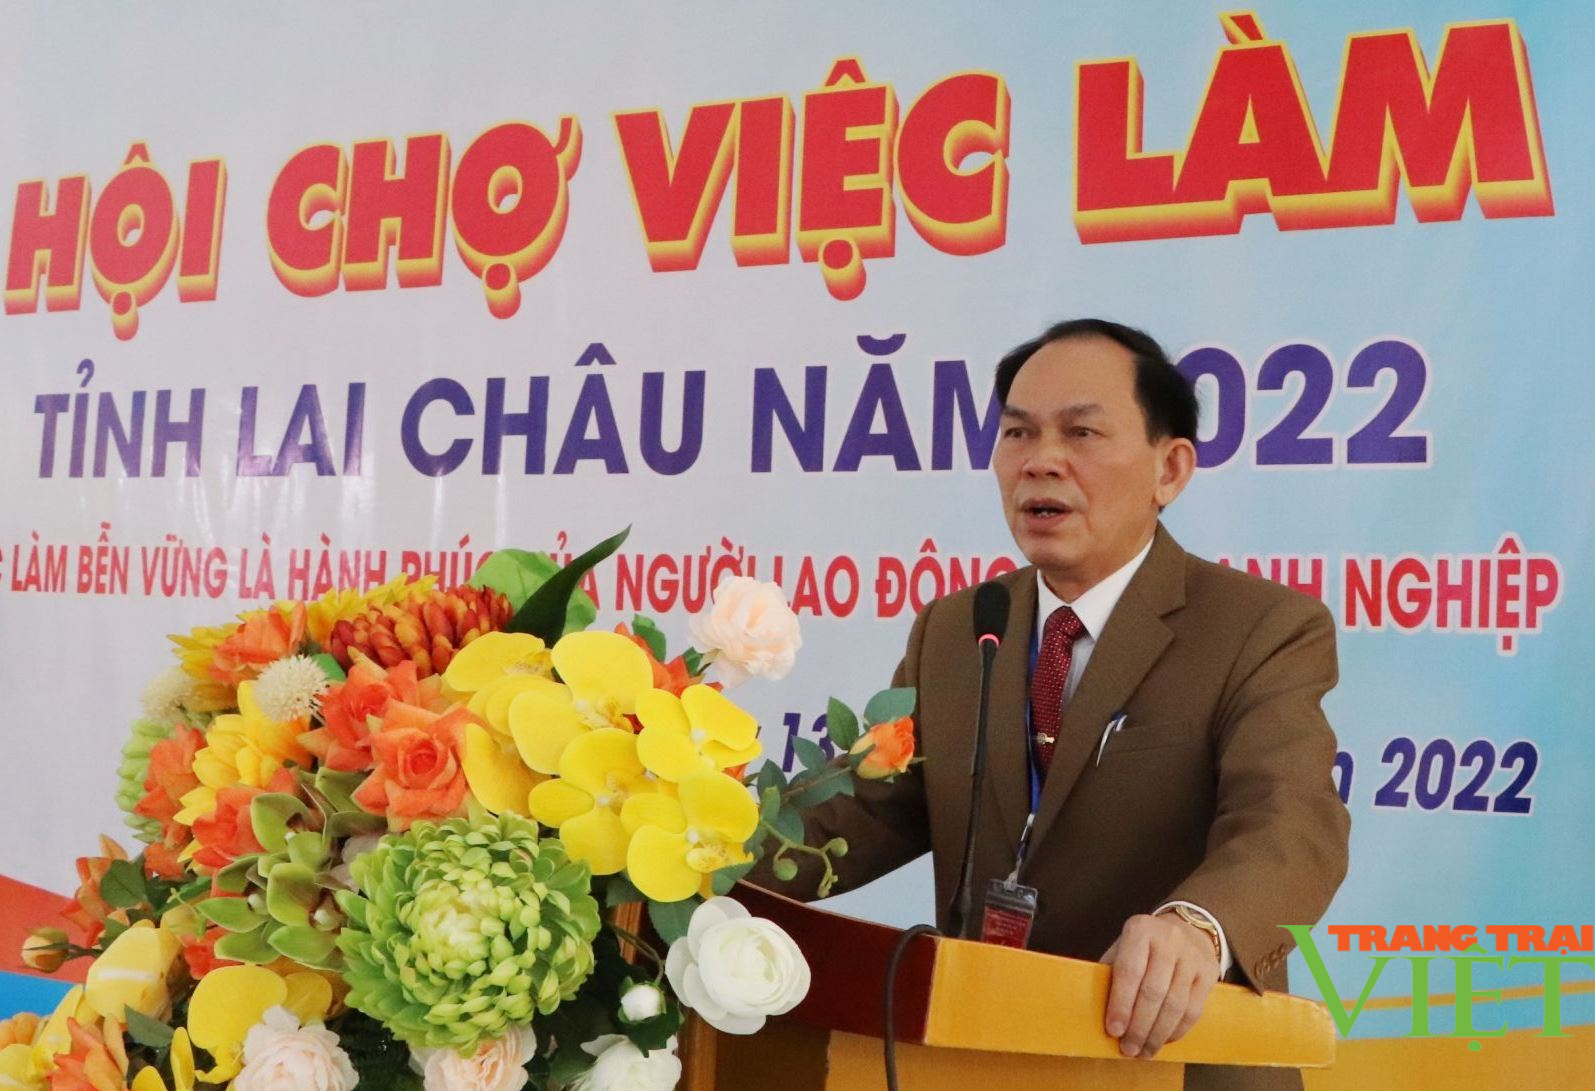 Hội chợ việc làm tỉnh Lai Châu Năm 2022 - Ảnh 2.